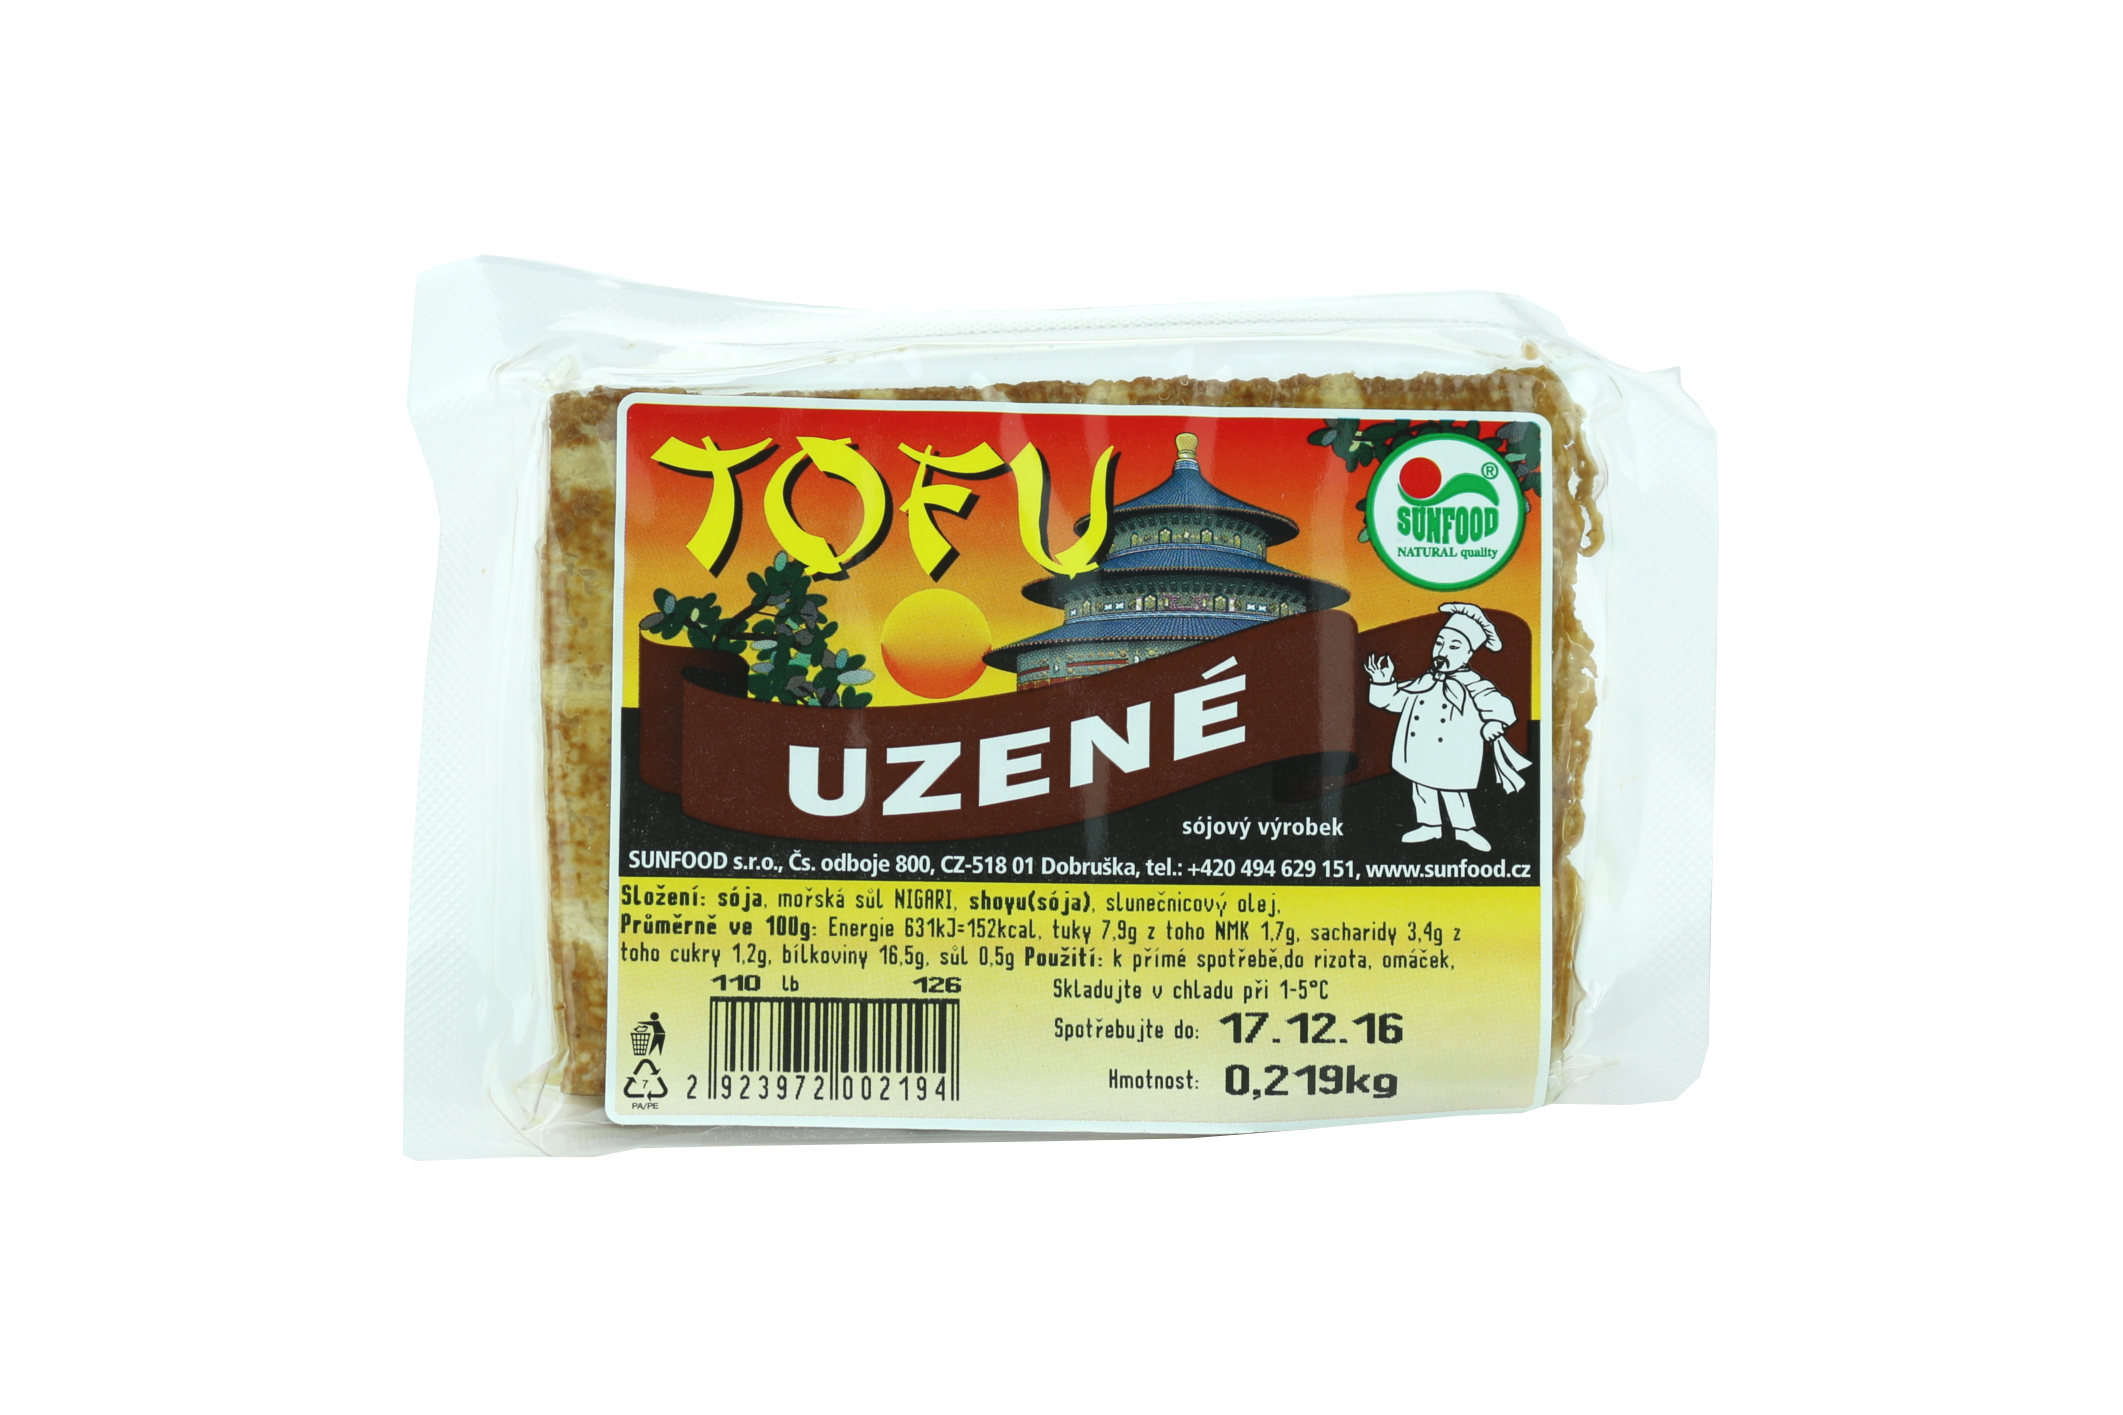 Tofu uzené 0,5 Kg - pouze rozvoz vybraná města nebo osobní odběr